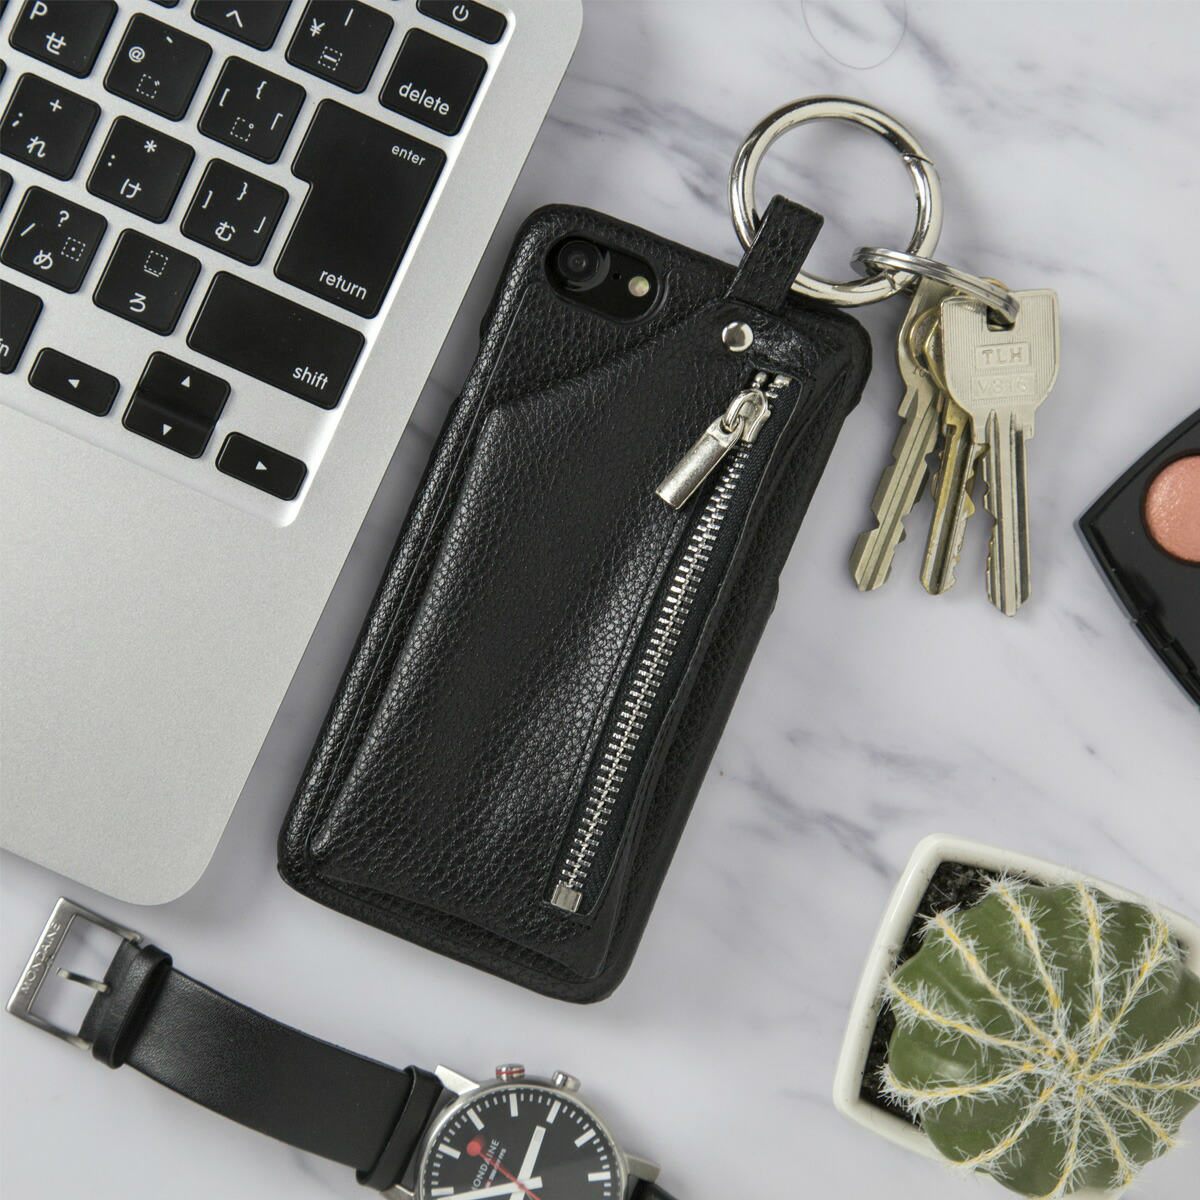 iPhone6 6s 7 8 7Plus 8Plus コインケース付きレザーケーススマホ ケース スマホ カバー 財布ケース 財布 財布付き 財布一体型 レザーケース アイフォン iphone6 iphone7 スマフォケース スマホカバー 携帯ケース 携帯カバー